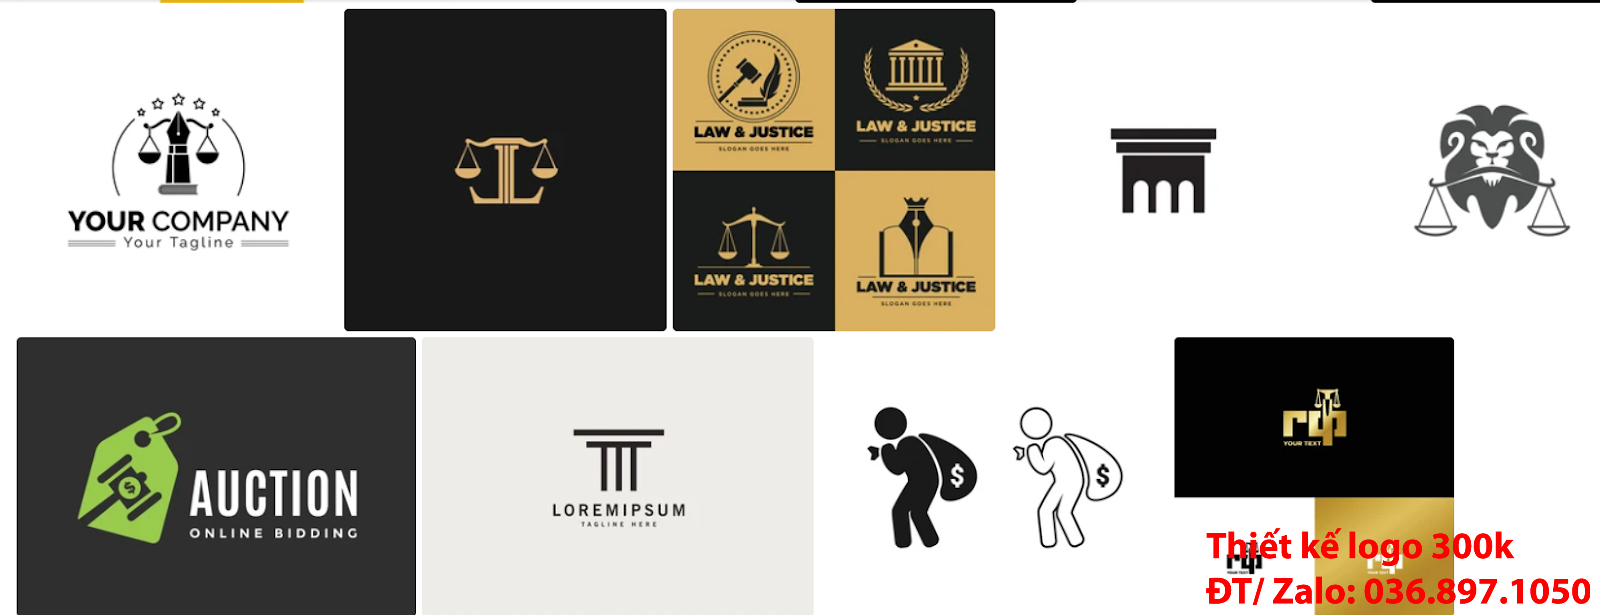 Mẫu logo công ty luật sư đẹp miễn phí chất lượng được làm tại công ty thiết kế lô gô chuyên nghiệp giá từ 300k - 500k ở Hà Nội